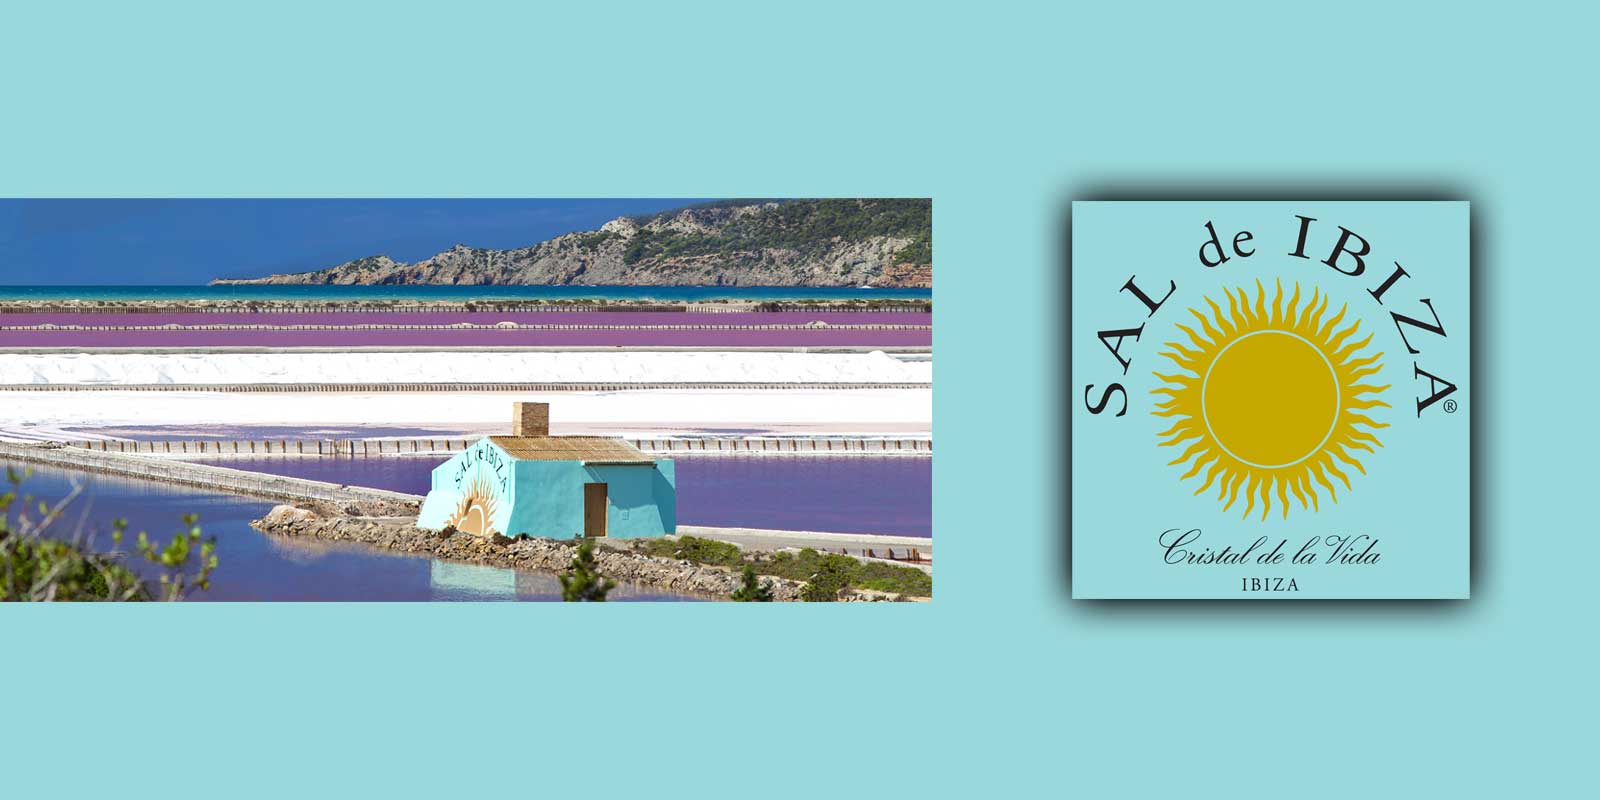 SAL de IBIZA Fleur de Sel este obtinuta in rezervatiile naturale ale minelor de sare din Ibiza. Cristalele mici si fragile se formeaza doar atunci cand este mult soare, umiditate scazuta si vant constant.